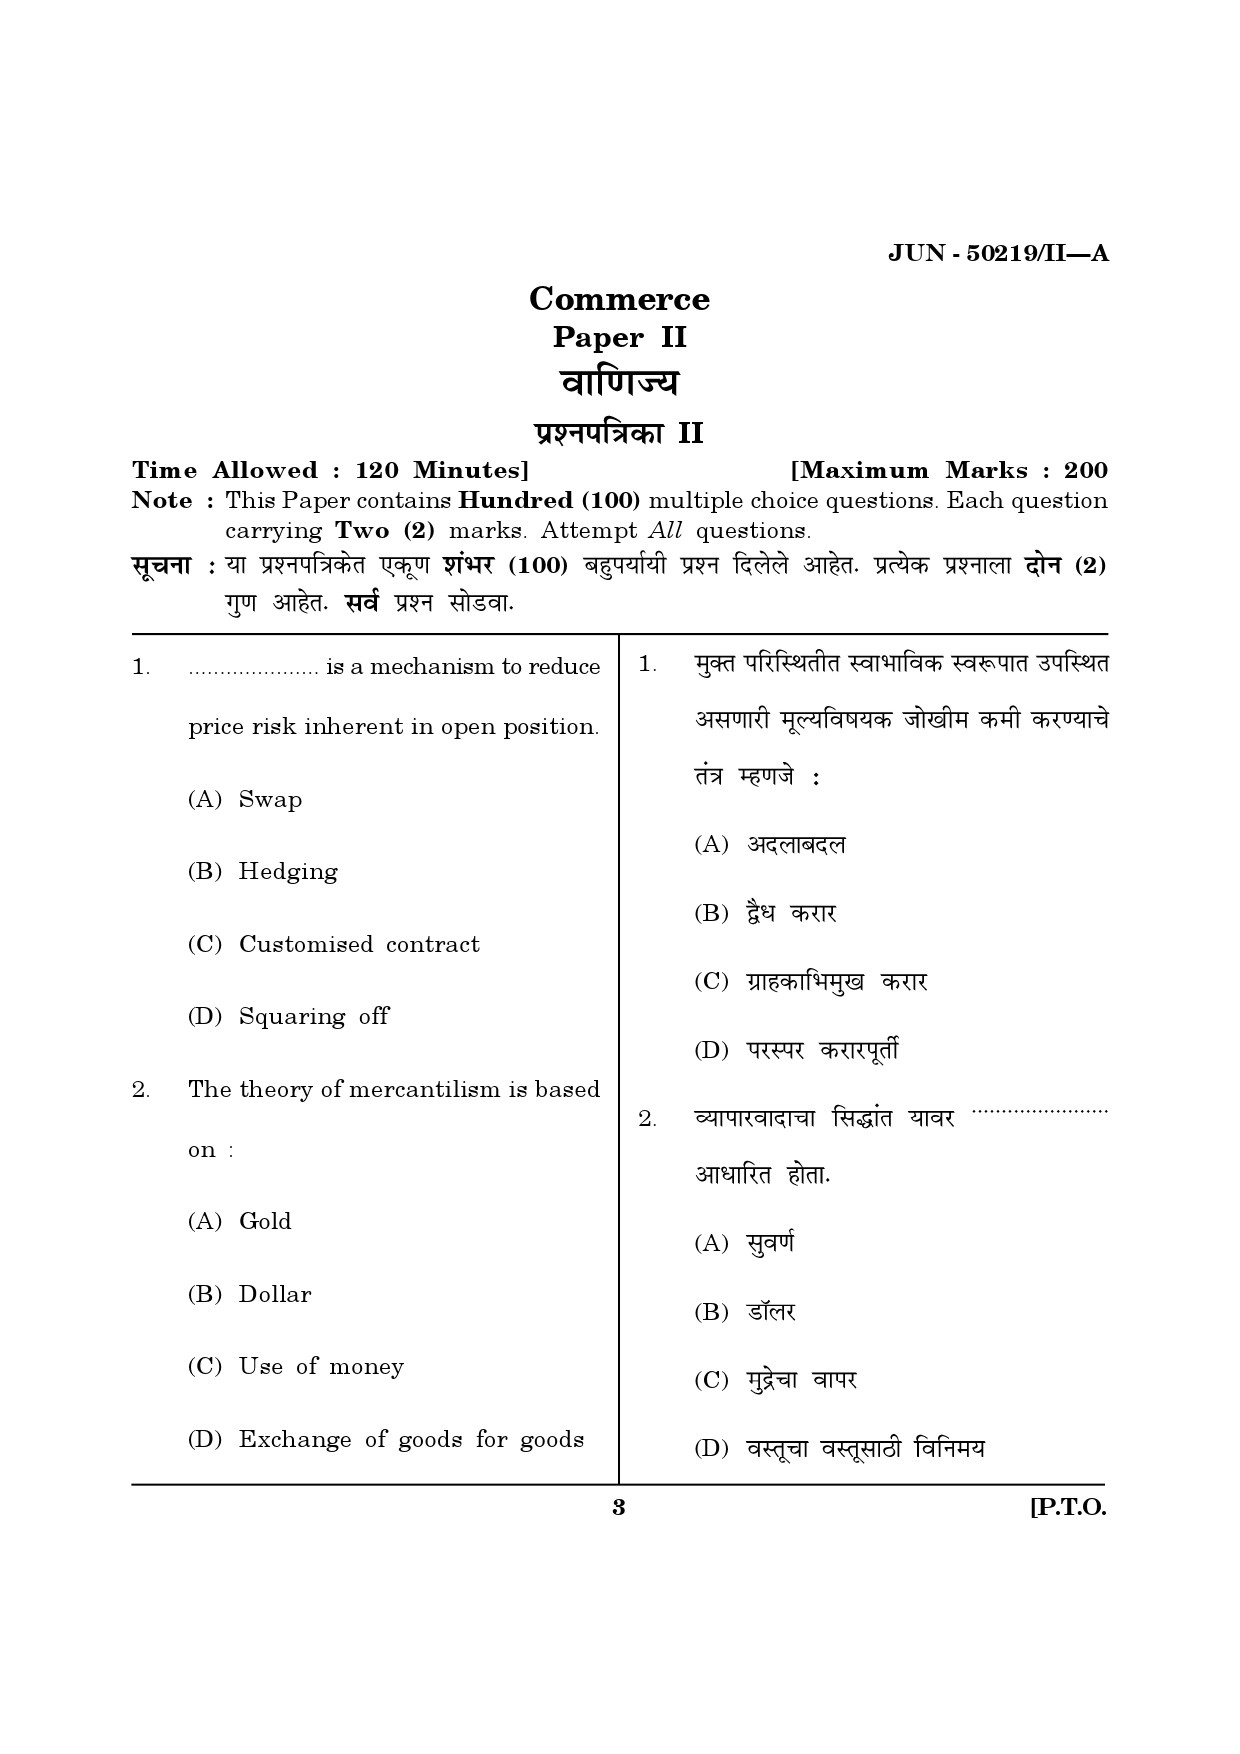 Maharashtra SET Commerce Question Paper II June 2019 2